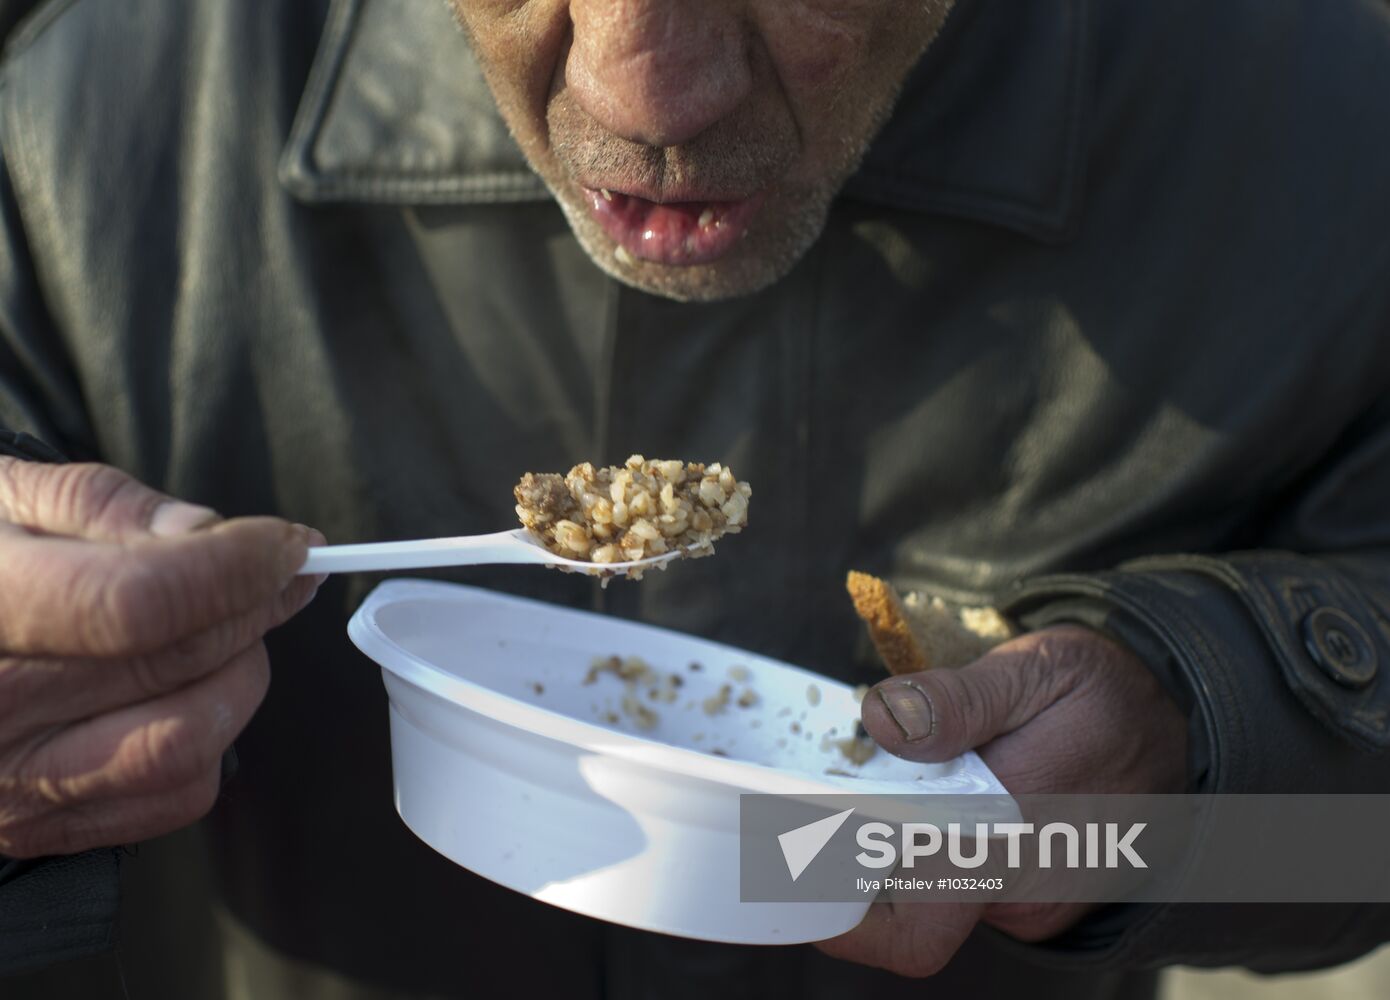 Distributing food to the homeless